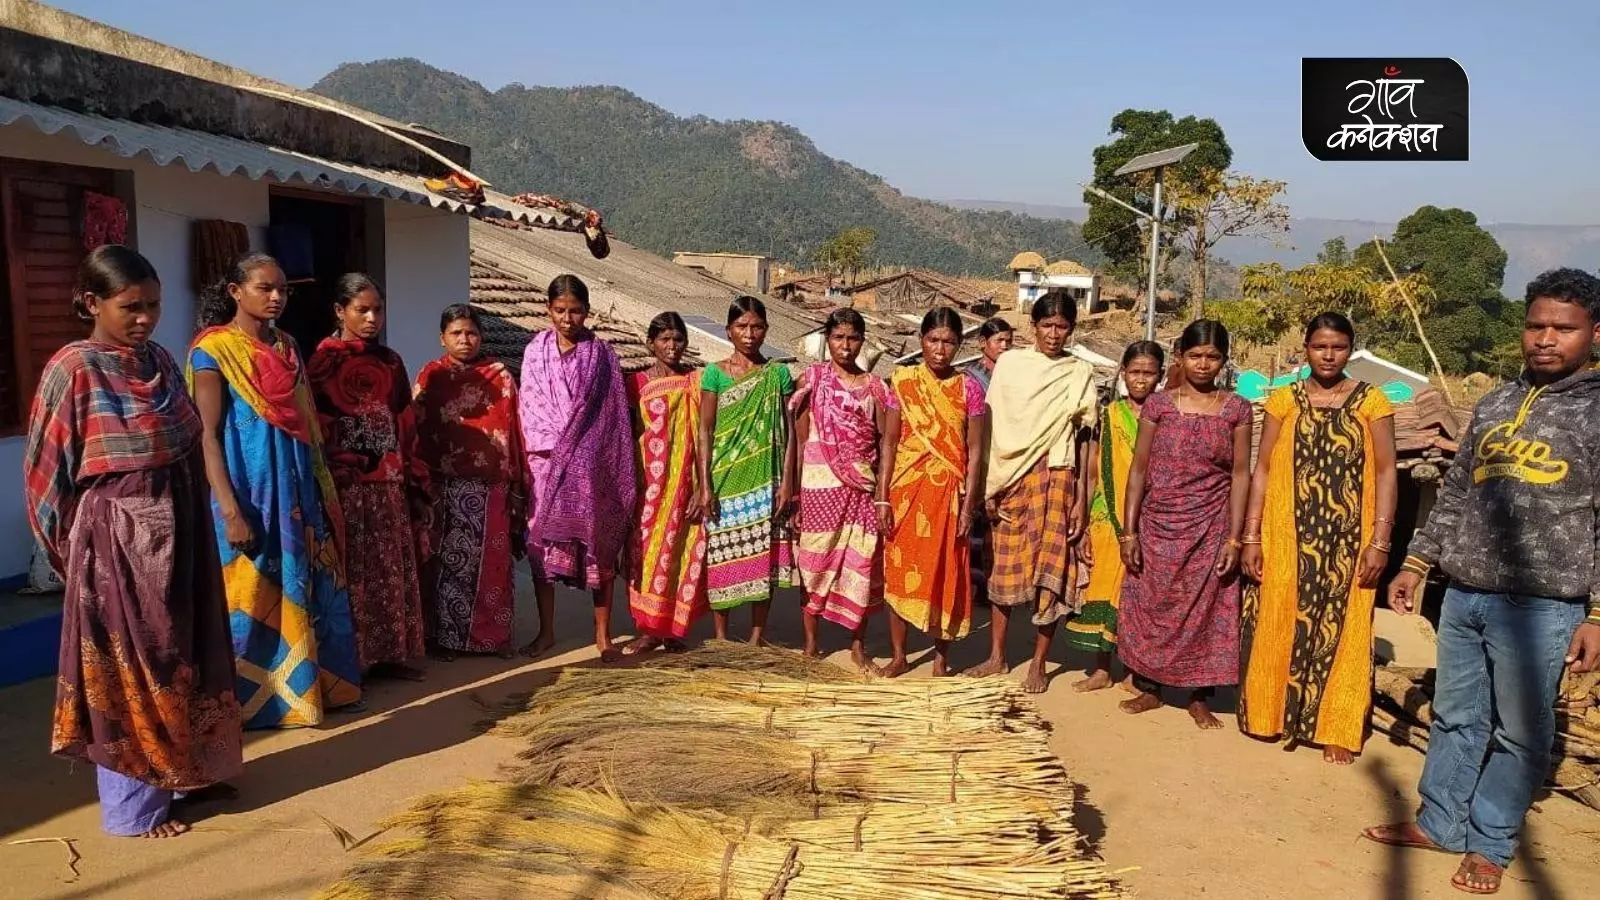 ओडिशा: कोरापुट की आदिवासी महिलाओं की जिंदगी में पारंपरिक झाड़ू बनाने के हुनर से आया बदलाव